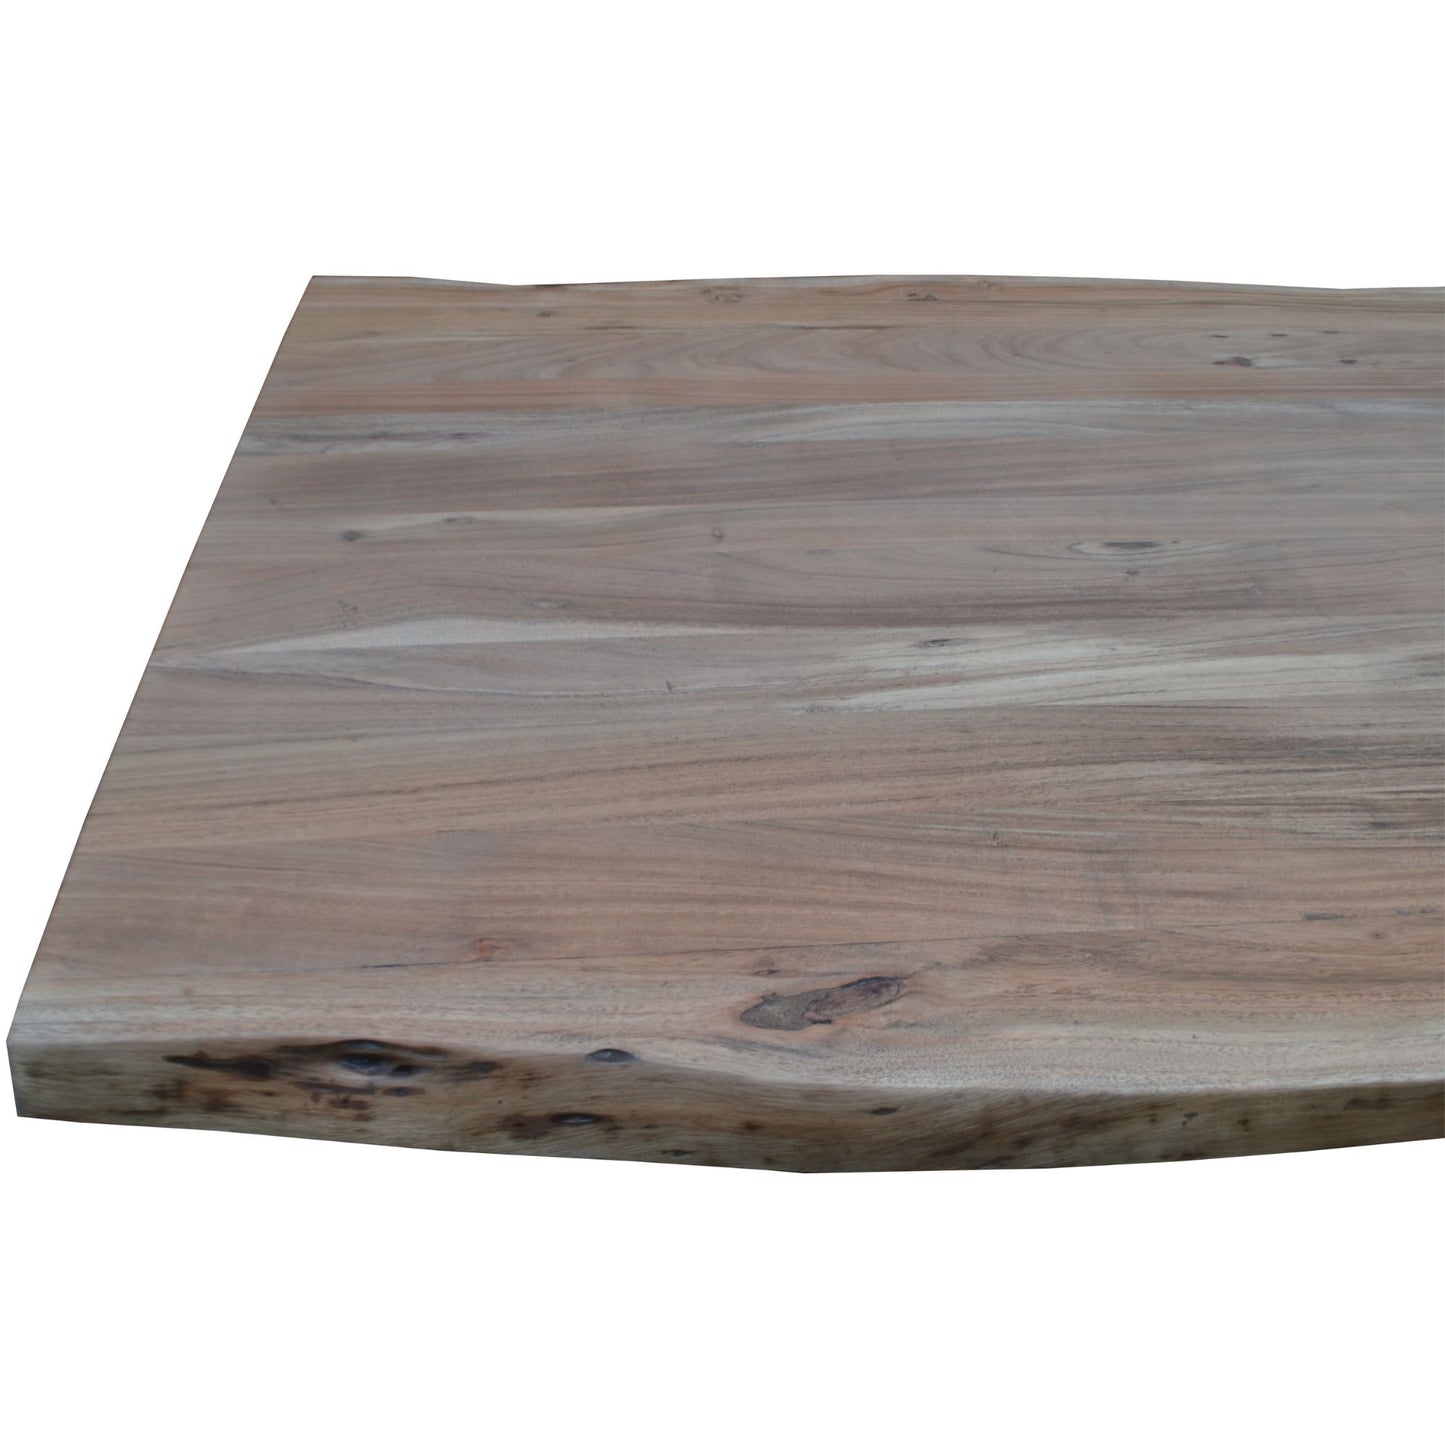 Lantana Solid Acacia Coffee Table 130cm - Natural